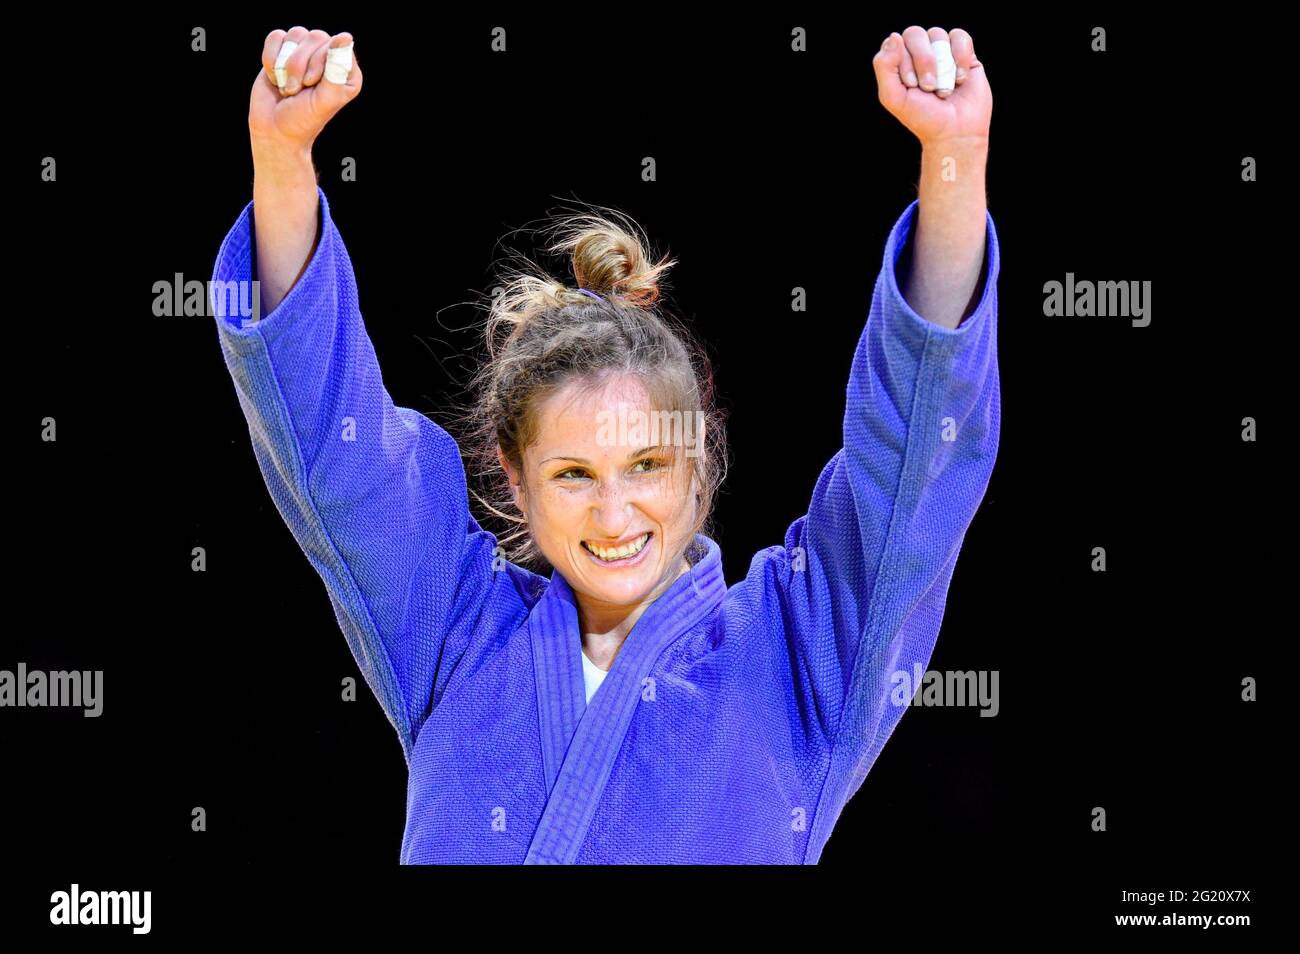 BUDAPEST, HONGRIE - JUIN 7 : Fabienne Koch, Suisse, lauréate de la médaille de bronze femmes -52 kg lors des Championnats du monde de judo Hongrie 2021 au Papp Laszlo Budapest Sports Arena le 7 juin 2021 à Budapest, Hongrie (photo de Yannick Verhoeven/Orange Pictures) Banque D'Images